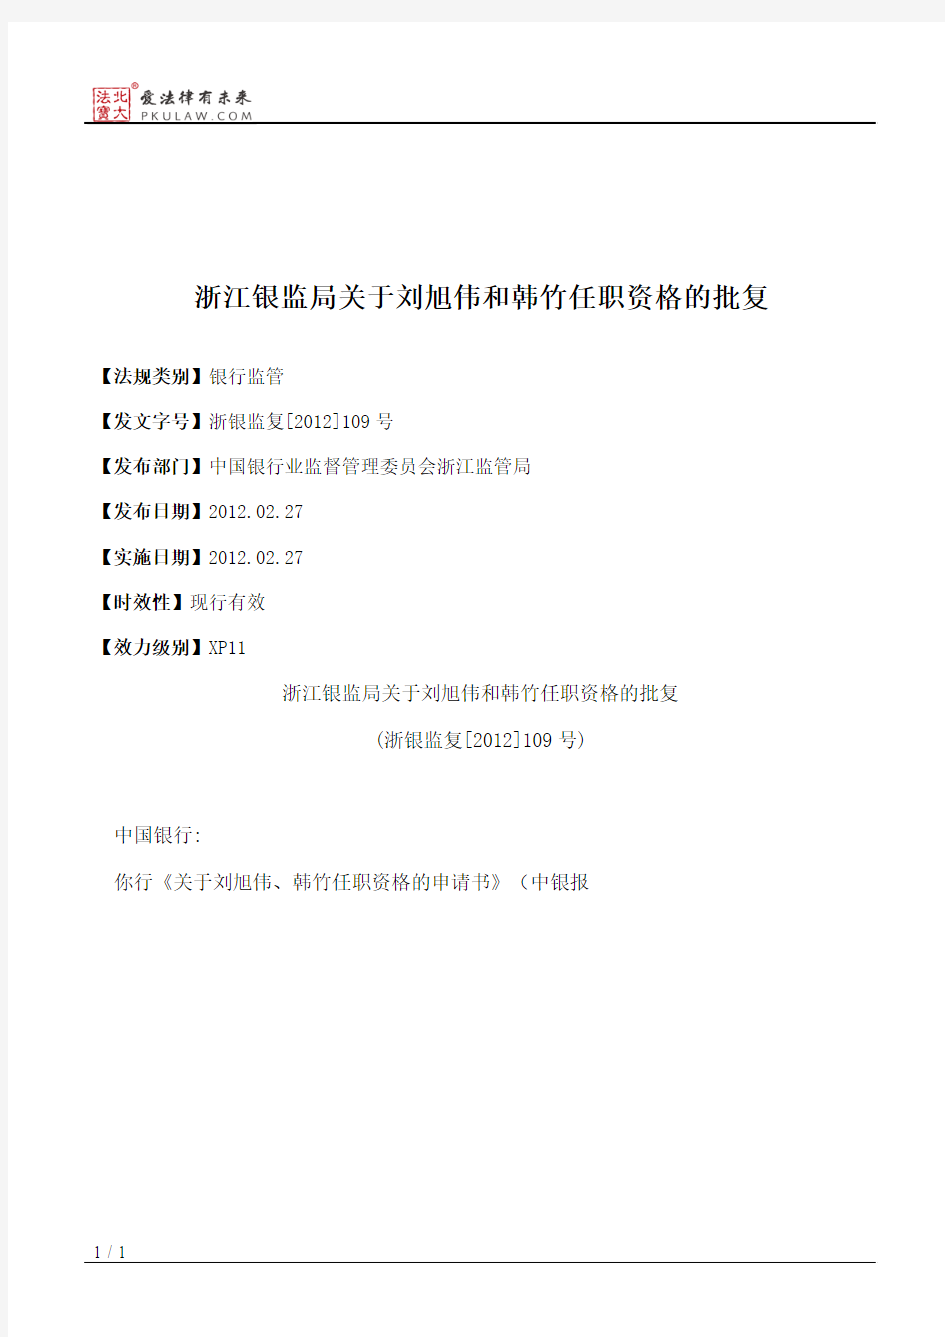 浙江银监局关于刘旭伟和韩竹任职资格的批复